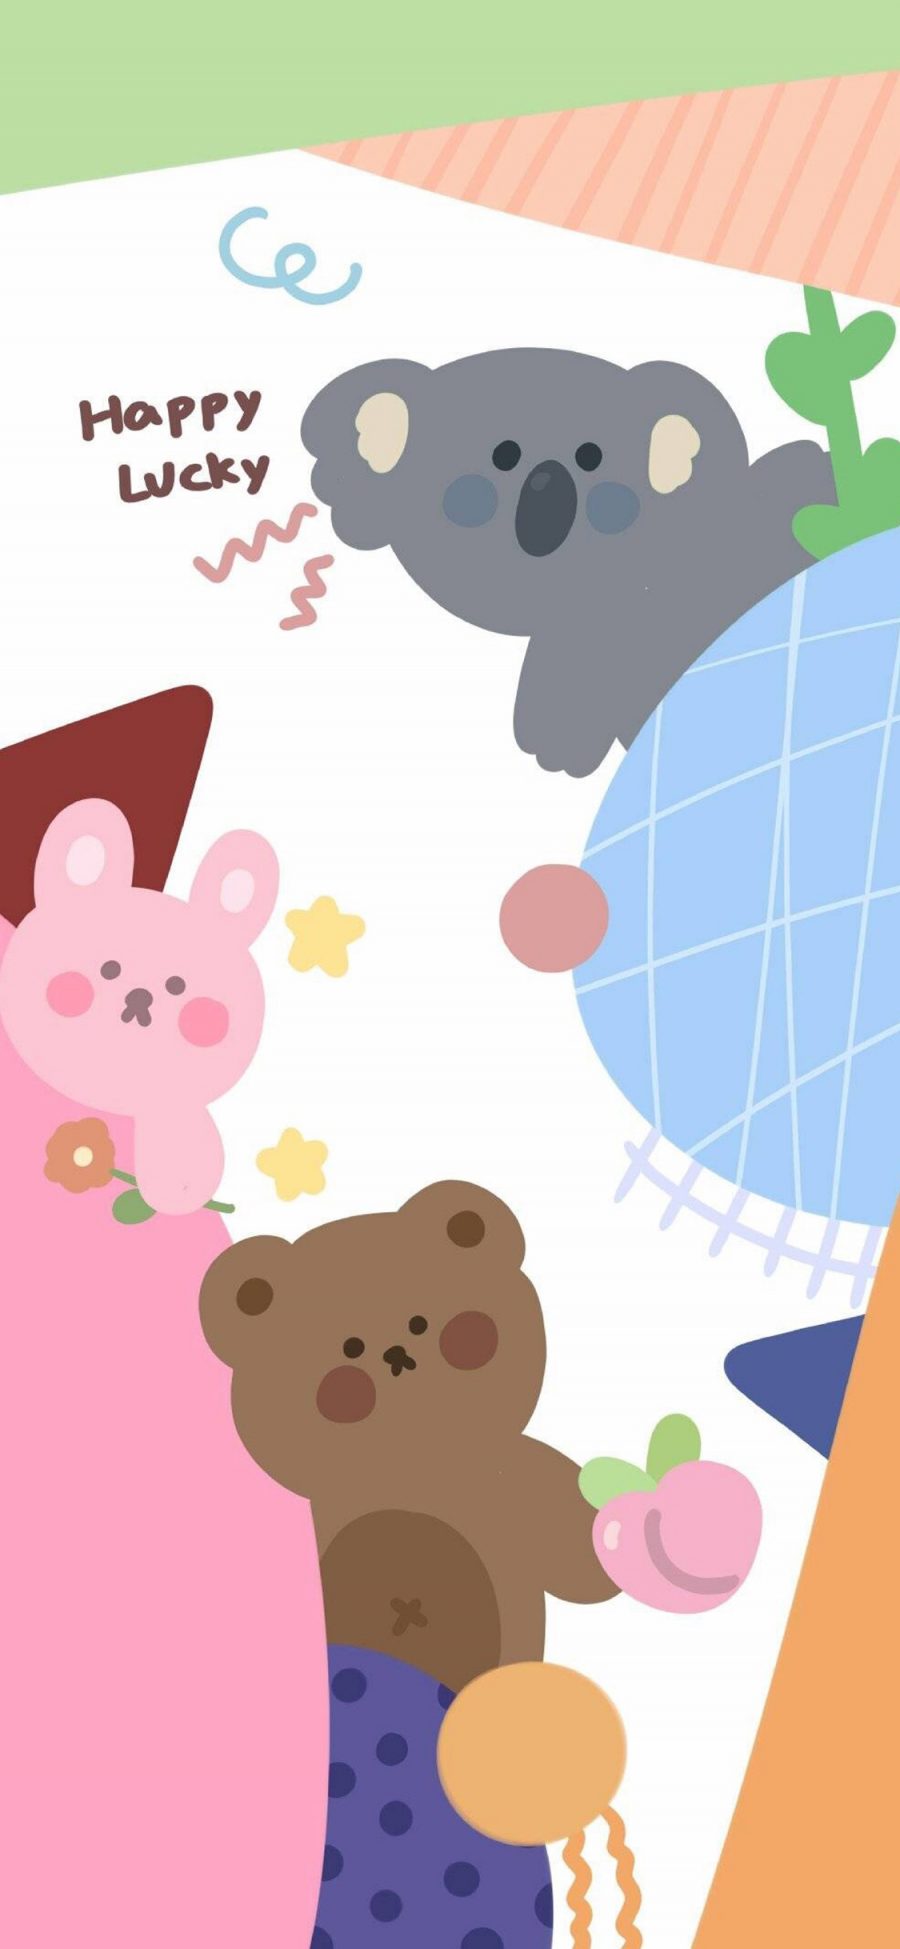 [2436×1125]卡通 兔子 小熊 考拉 happy lucky 苹果手机动漫壁纸图片